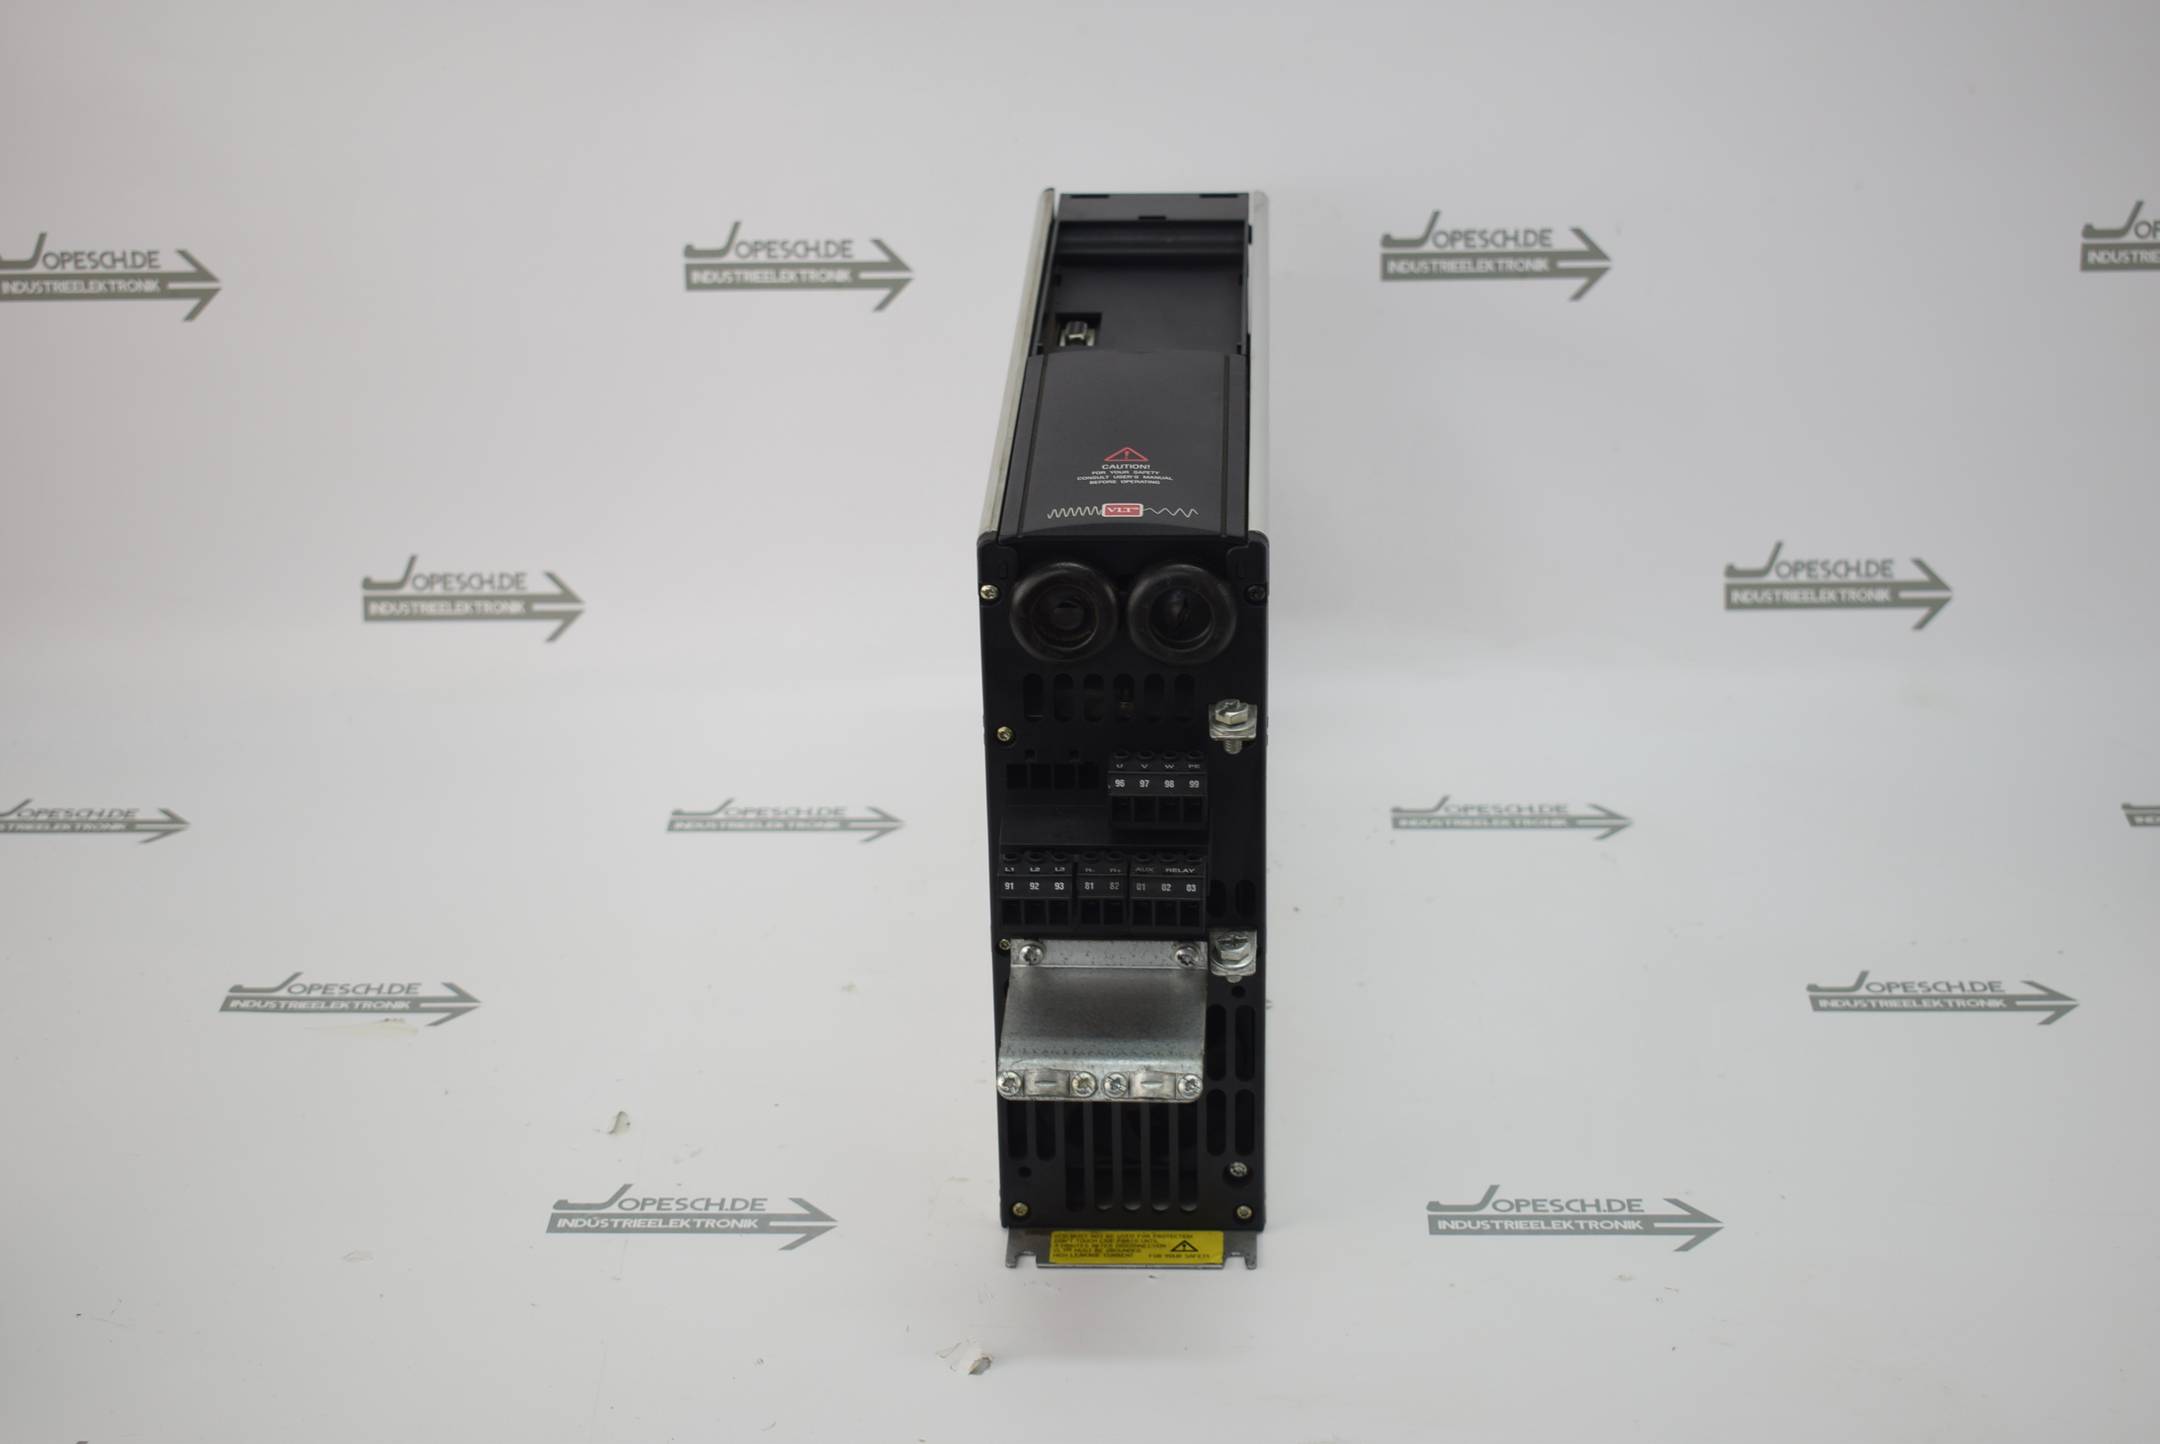 Danfoss VLT Type 5004 Frequenzumrichter 175Z0053